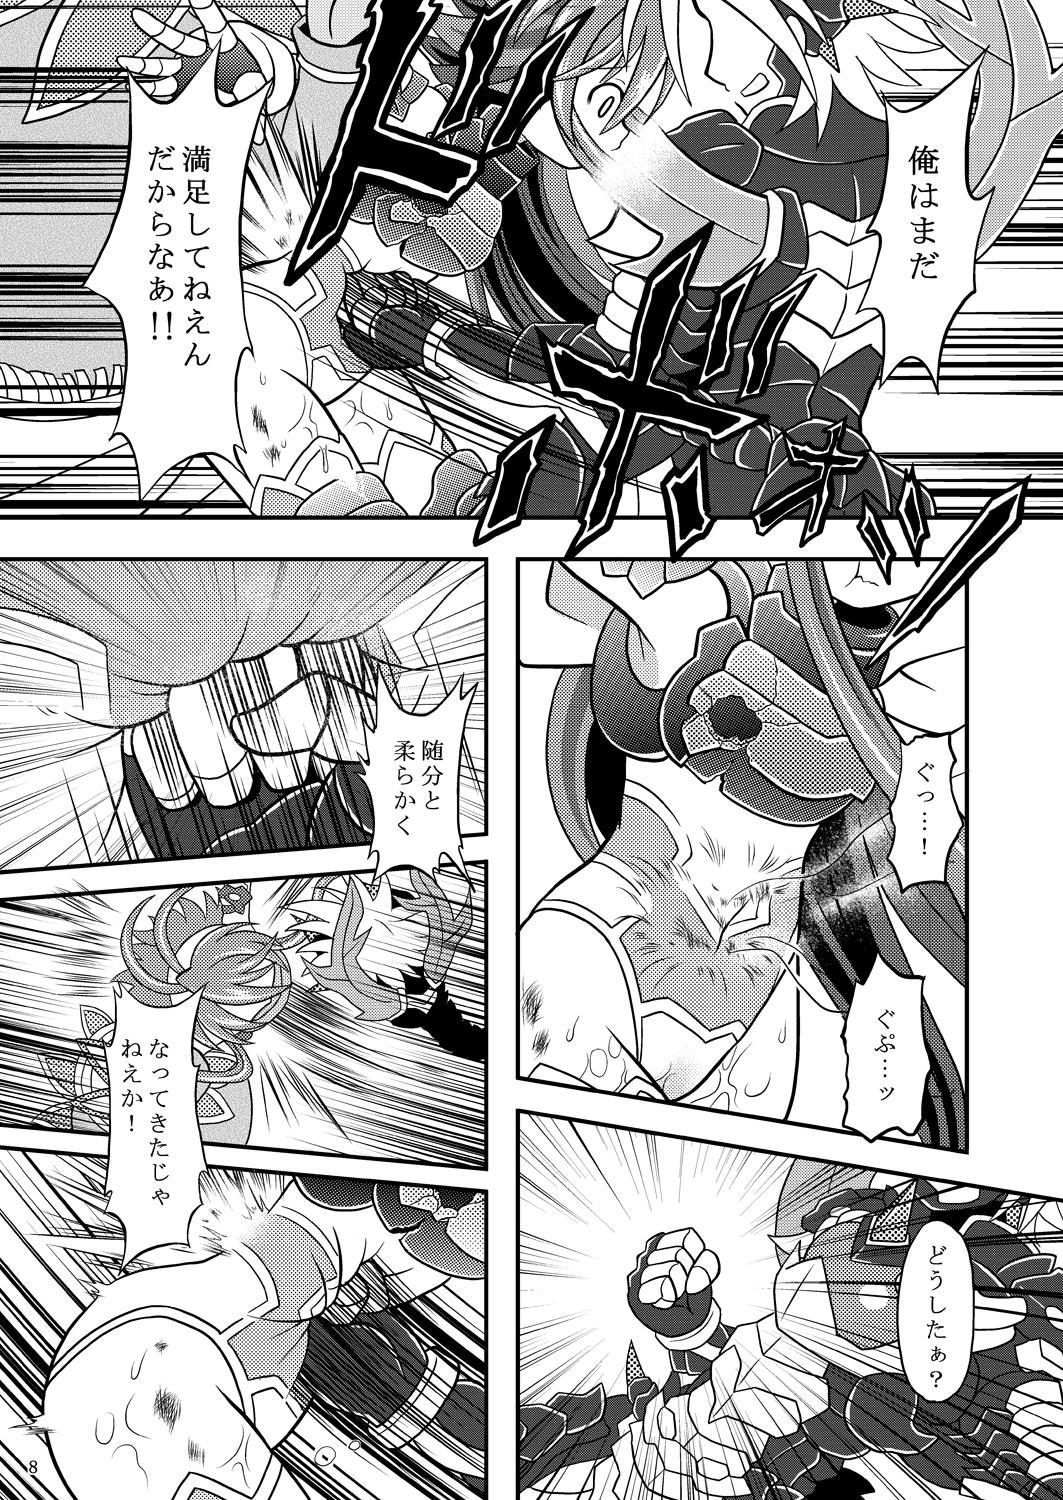 Fudendo Suireiken vs Zettai Bouryoku - Shinrabansho Sologirl - Page 7